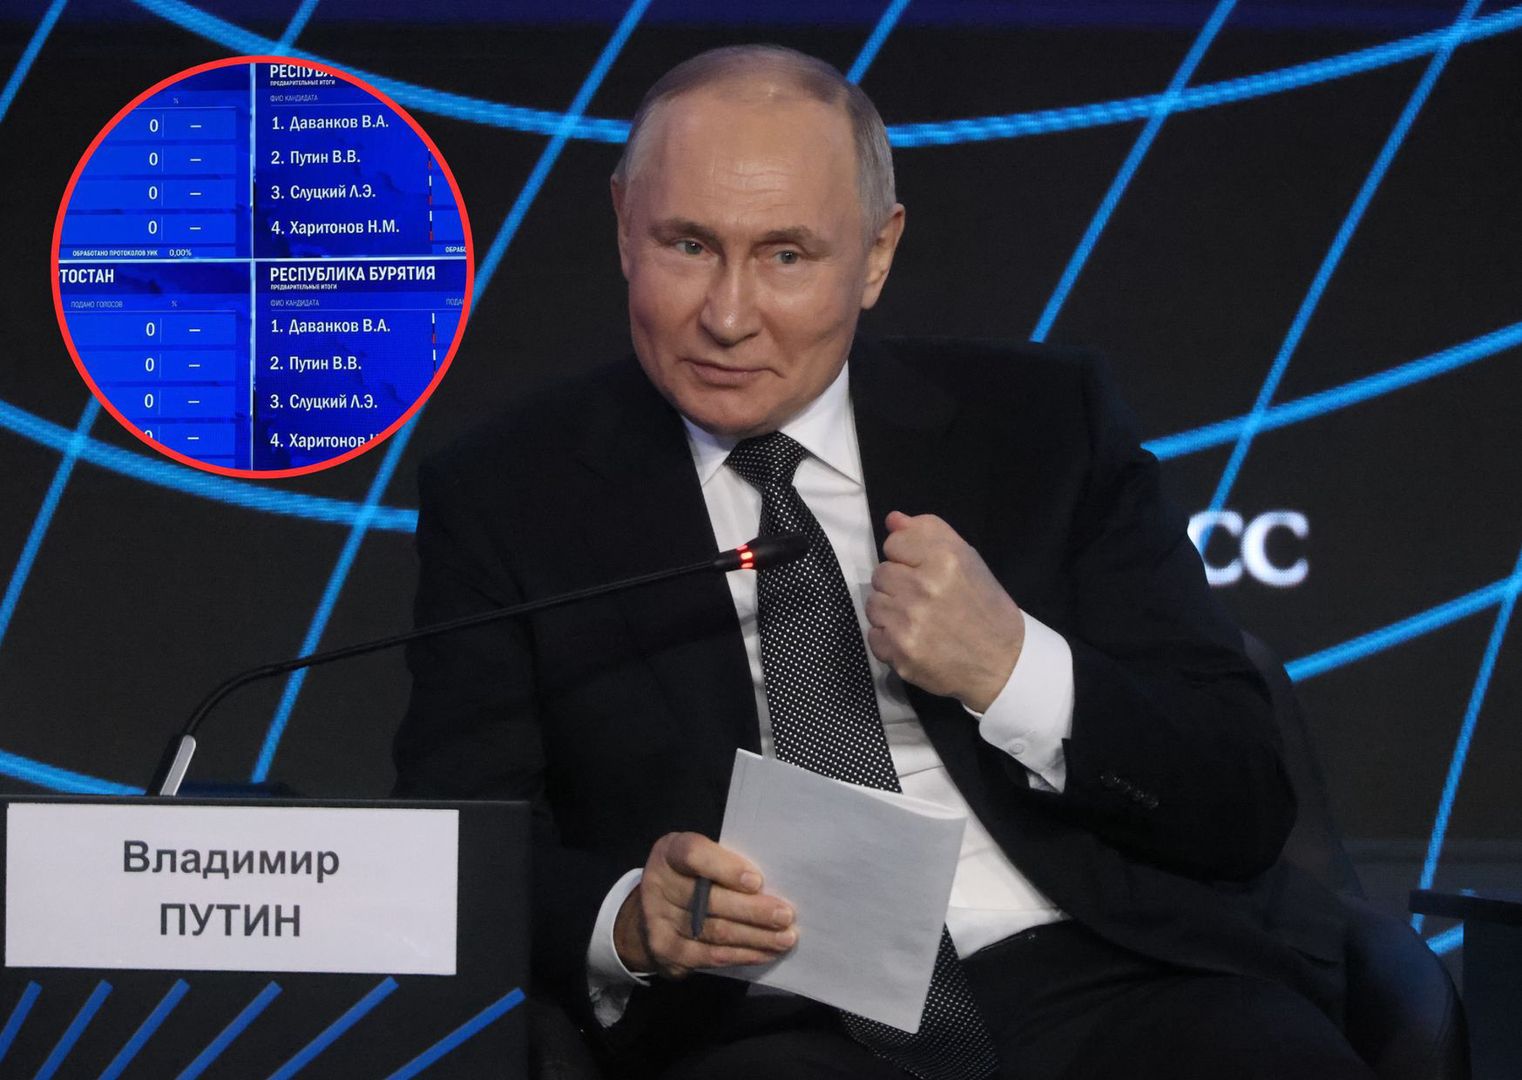 Cuda nad urnami? 87,51 procent głosów na Putina, a ludzie go nienawidzą